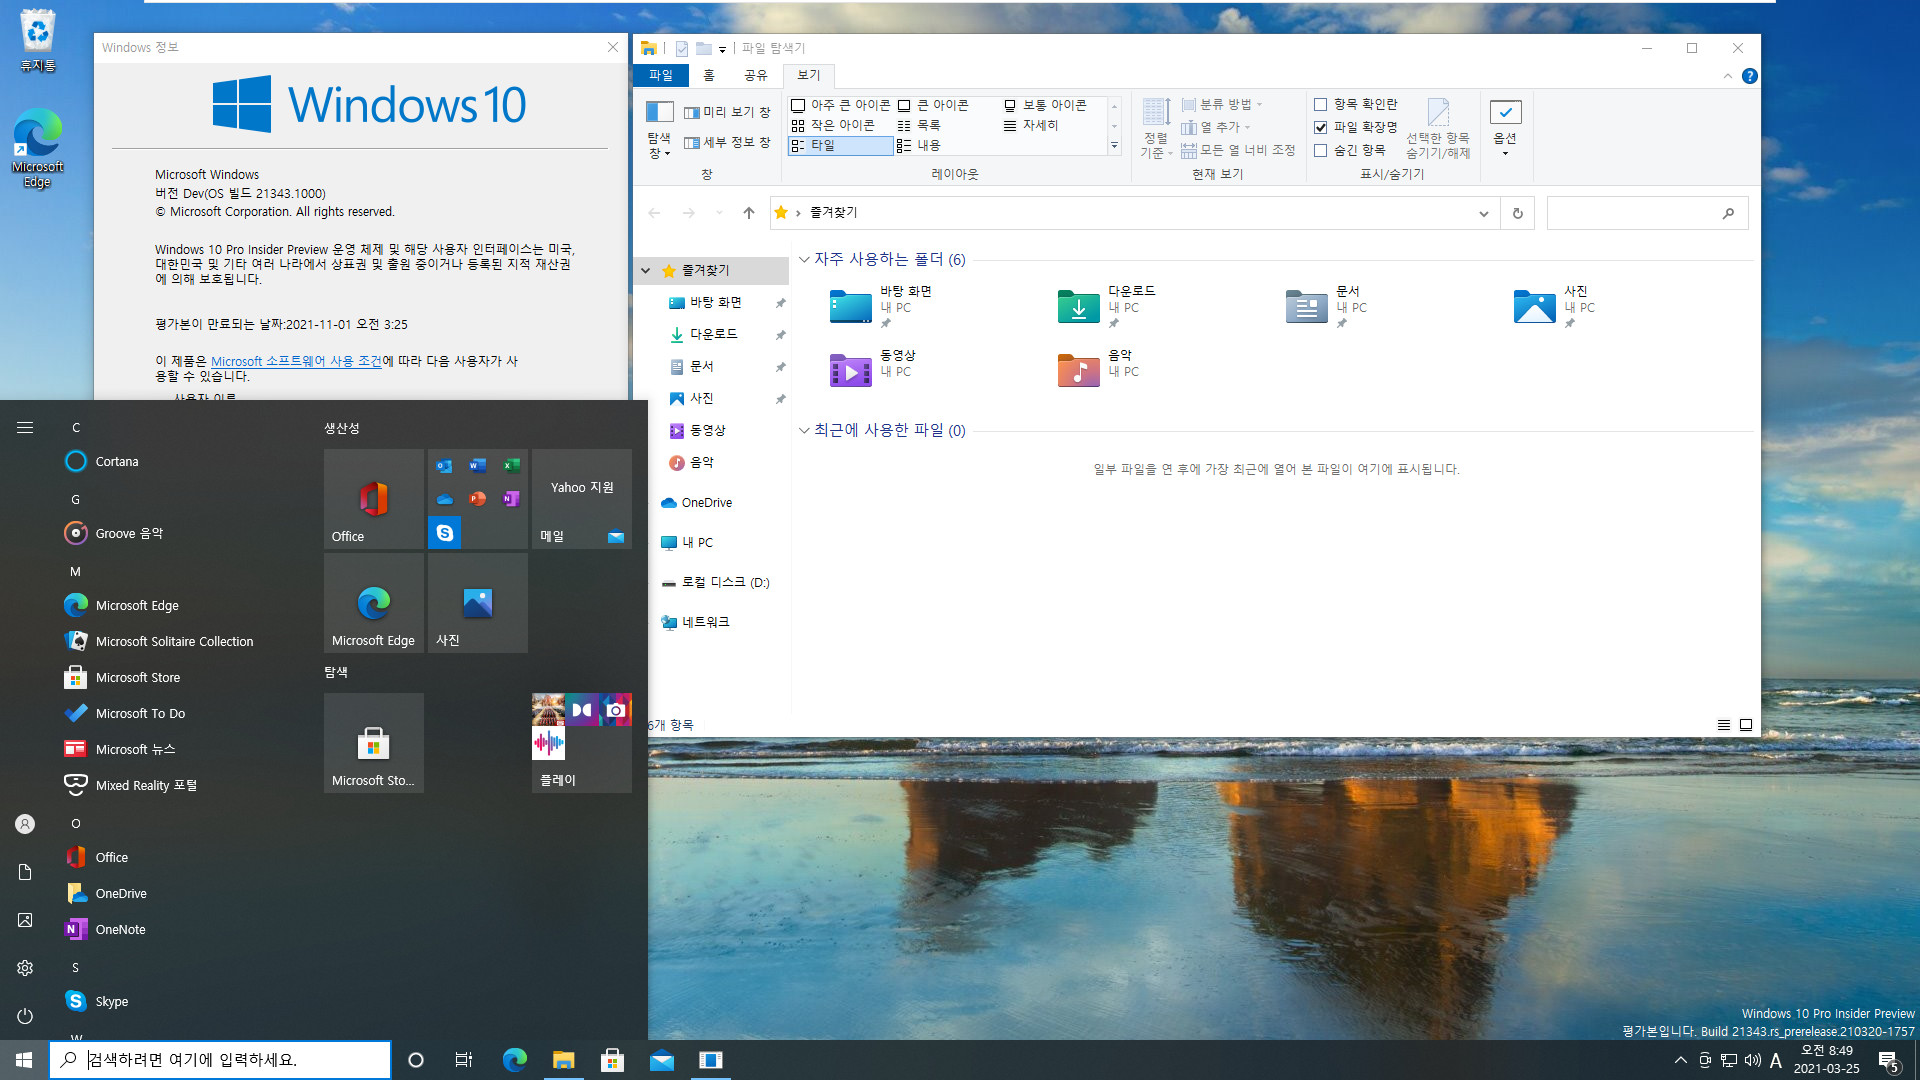 Windows 10 인사이더 프리뷰 - 버전 Dev (버전 21H2 추정), (OS 빌드 21343.1000) PRO x64 설치 테스트 - 아이콘들이 많이 변경되었네요 2021-03-25_084931.jpg